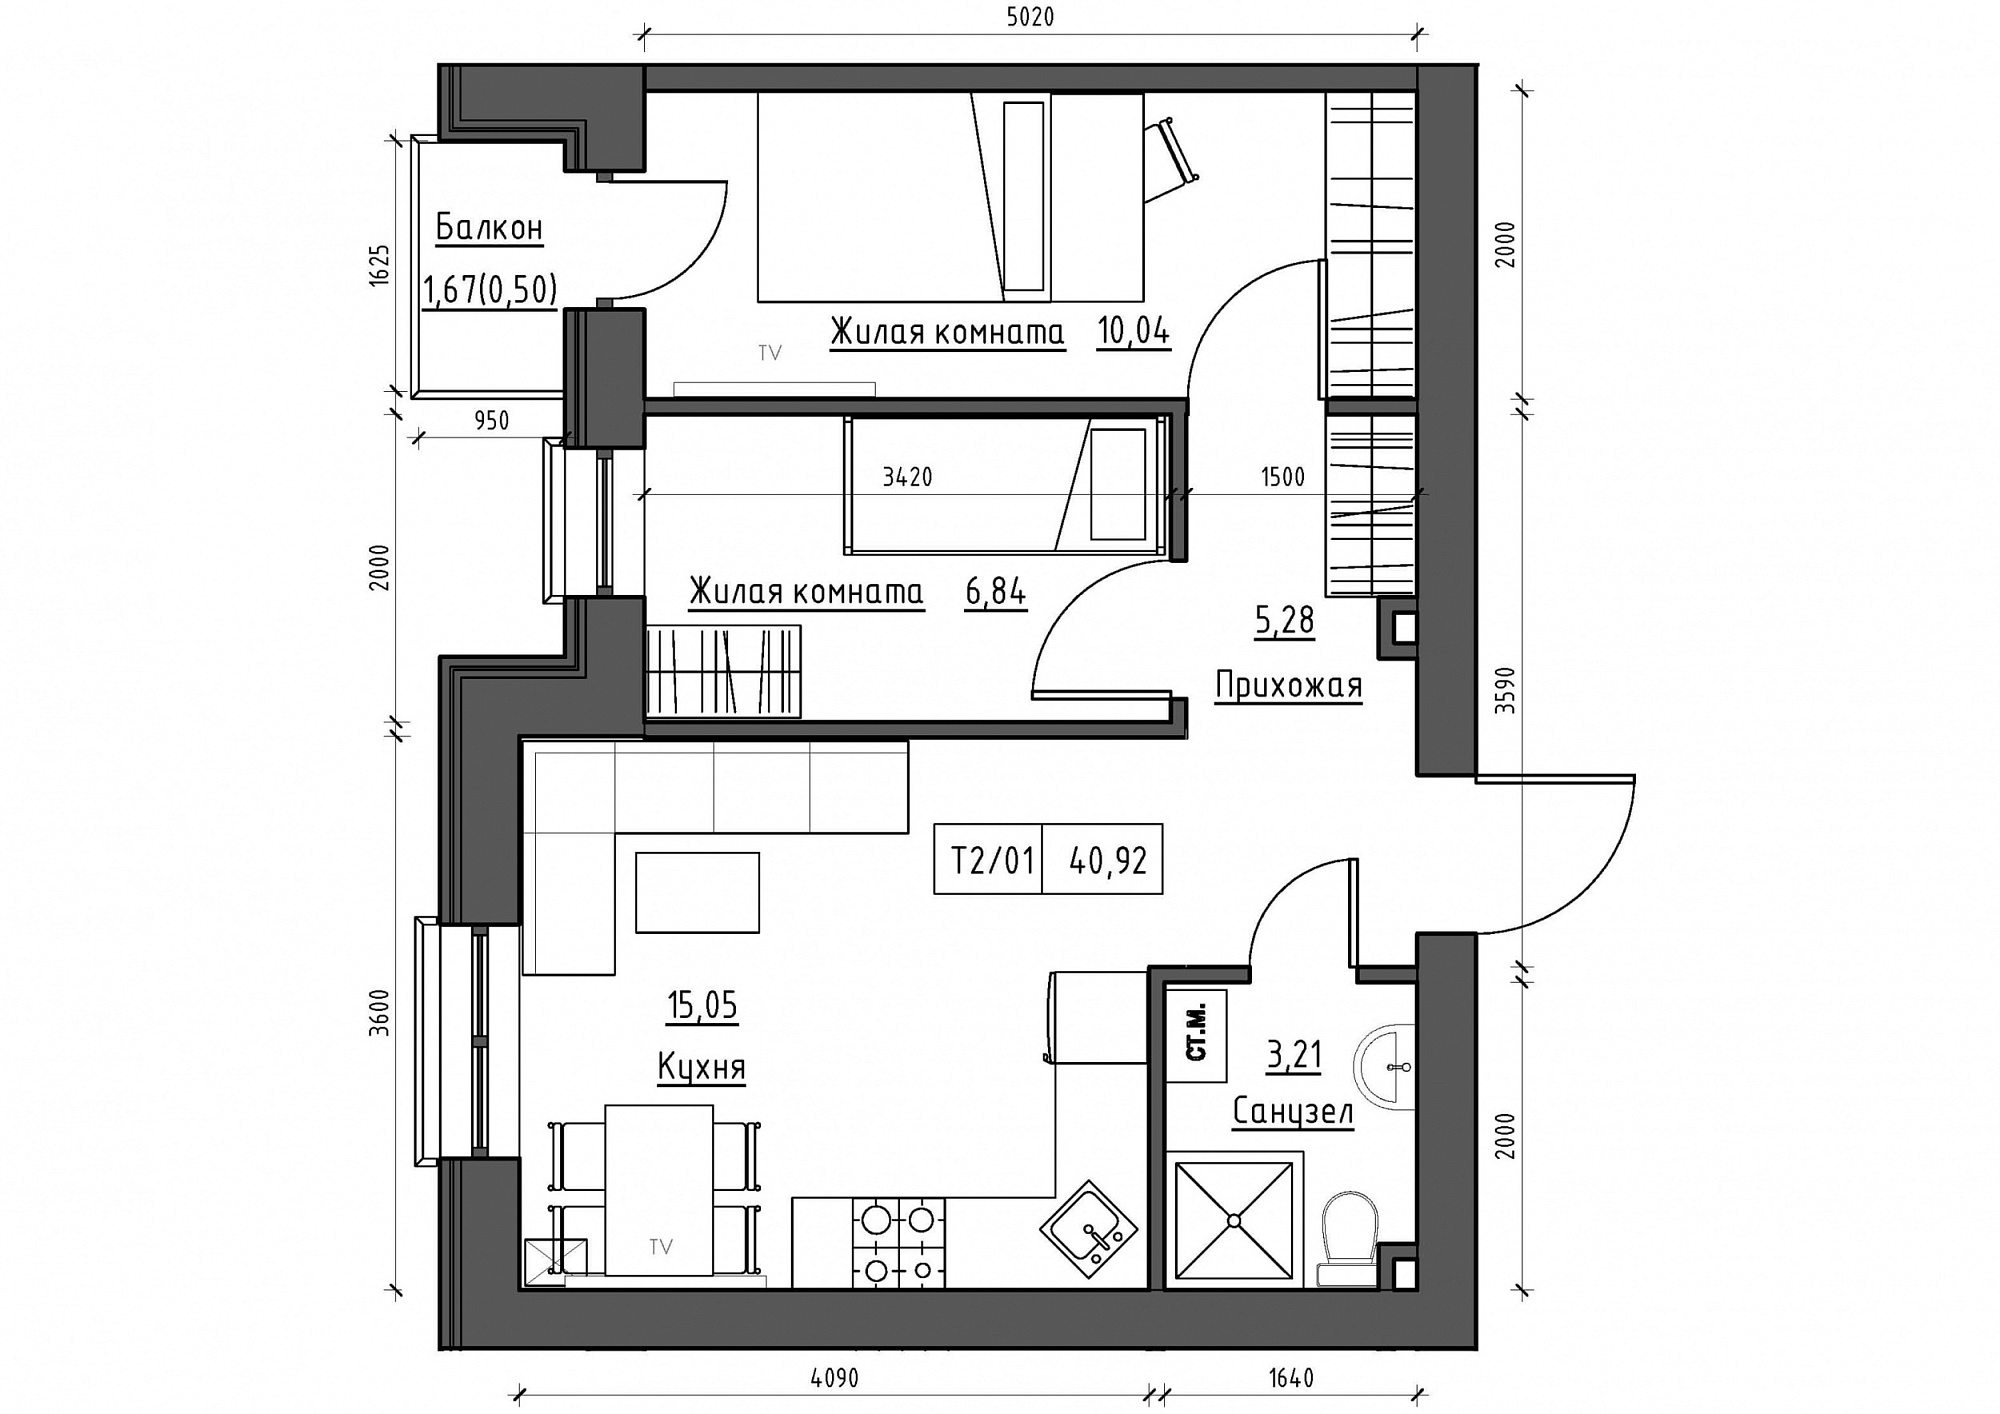 Планування 2-к квартира площею 40.92м2, KS-012-04/0010.